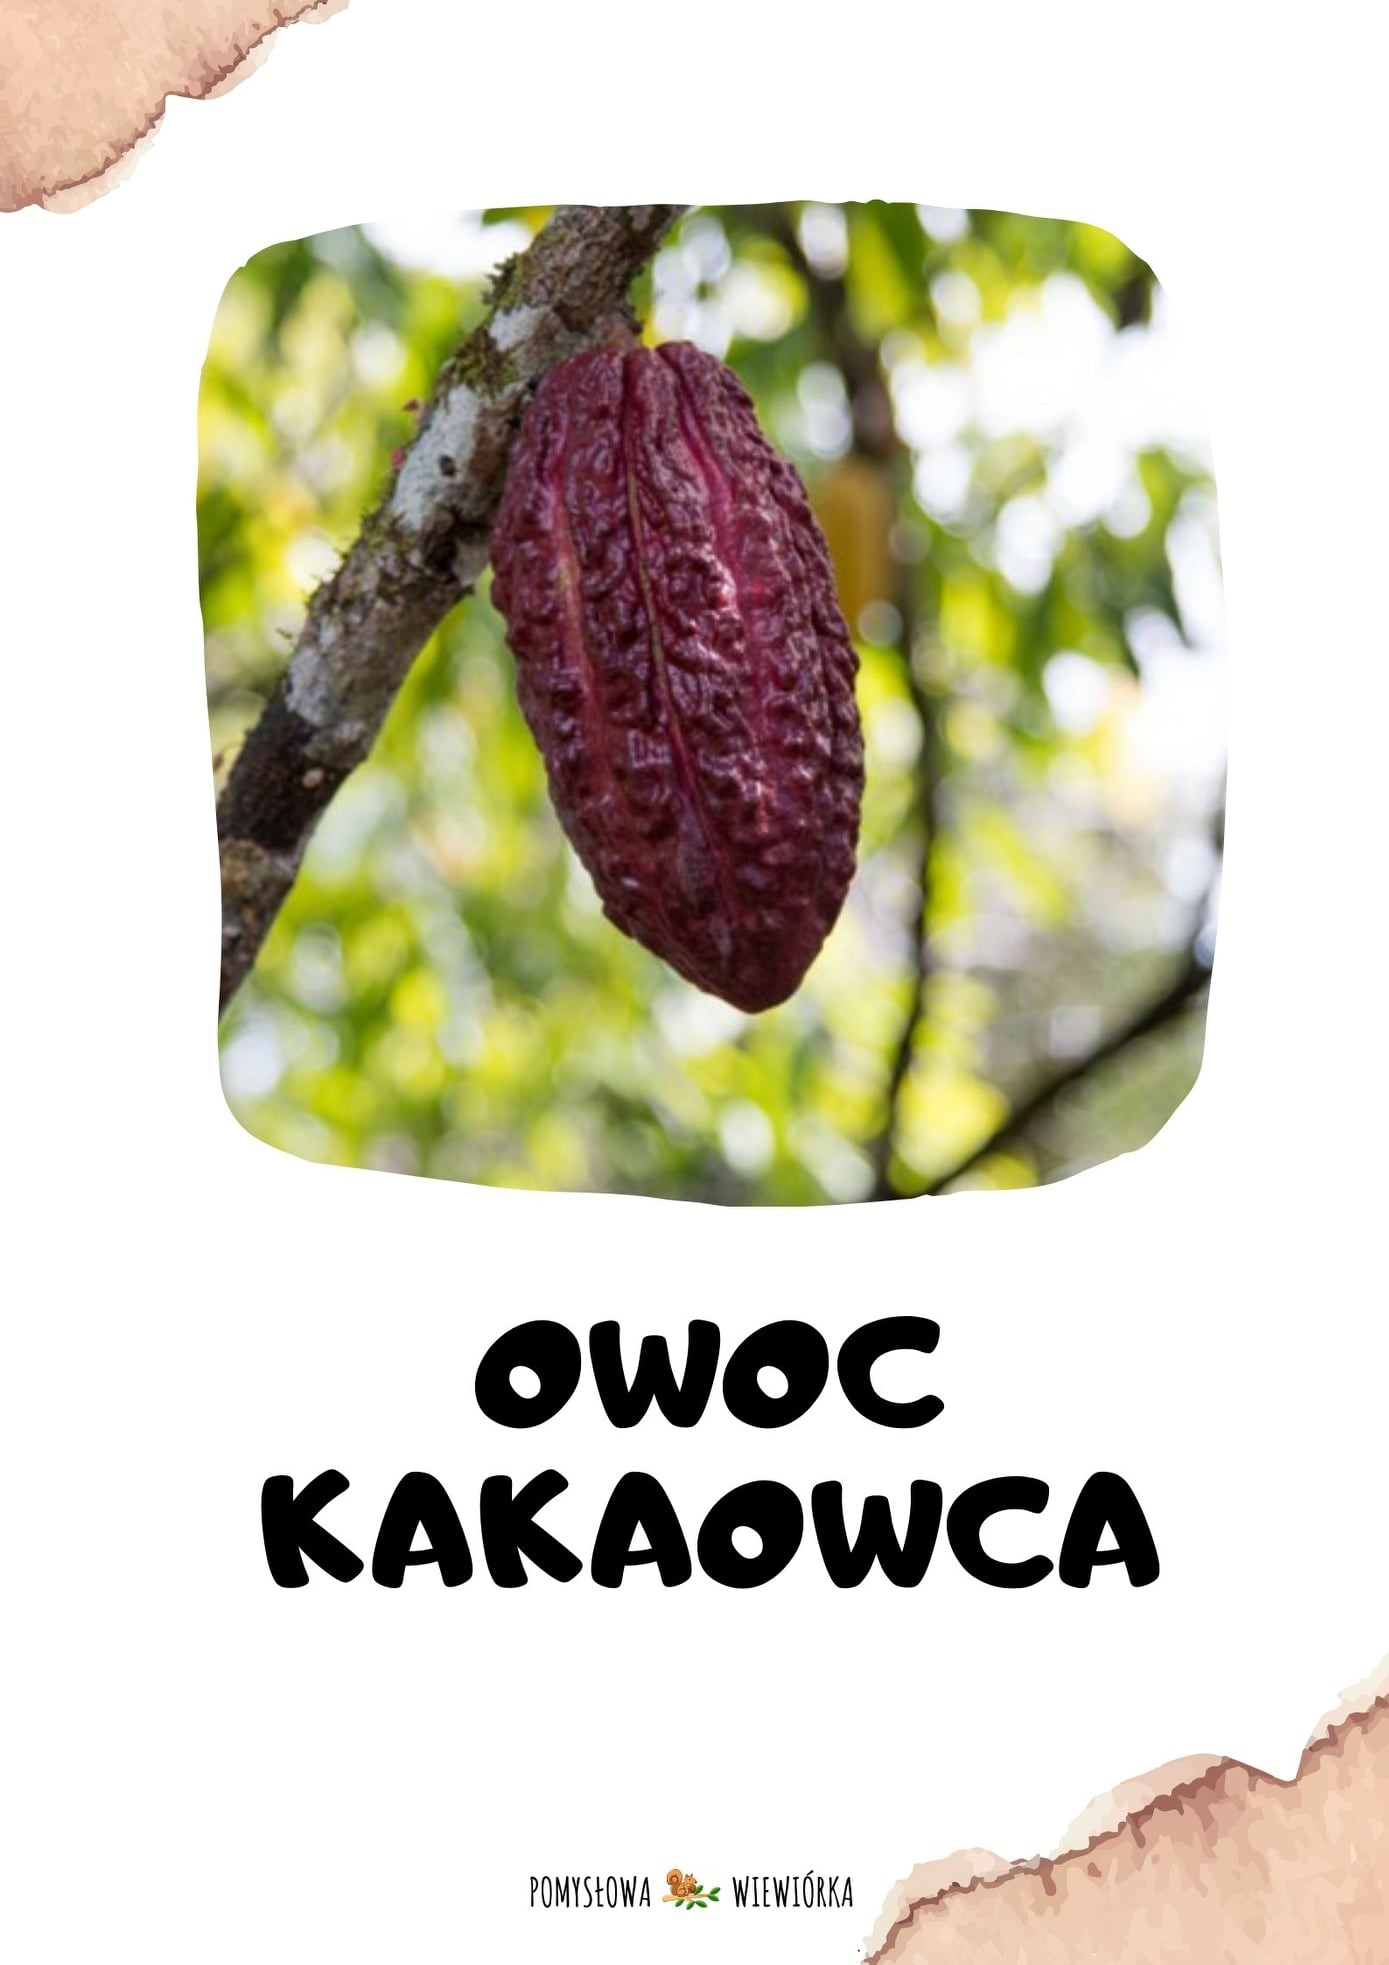 Owoc kakaowca